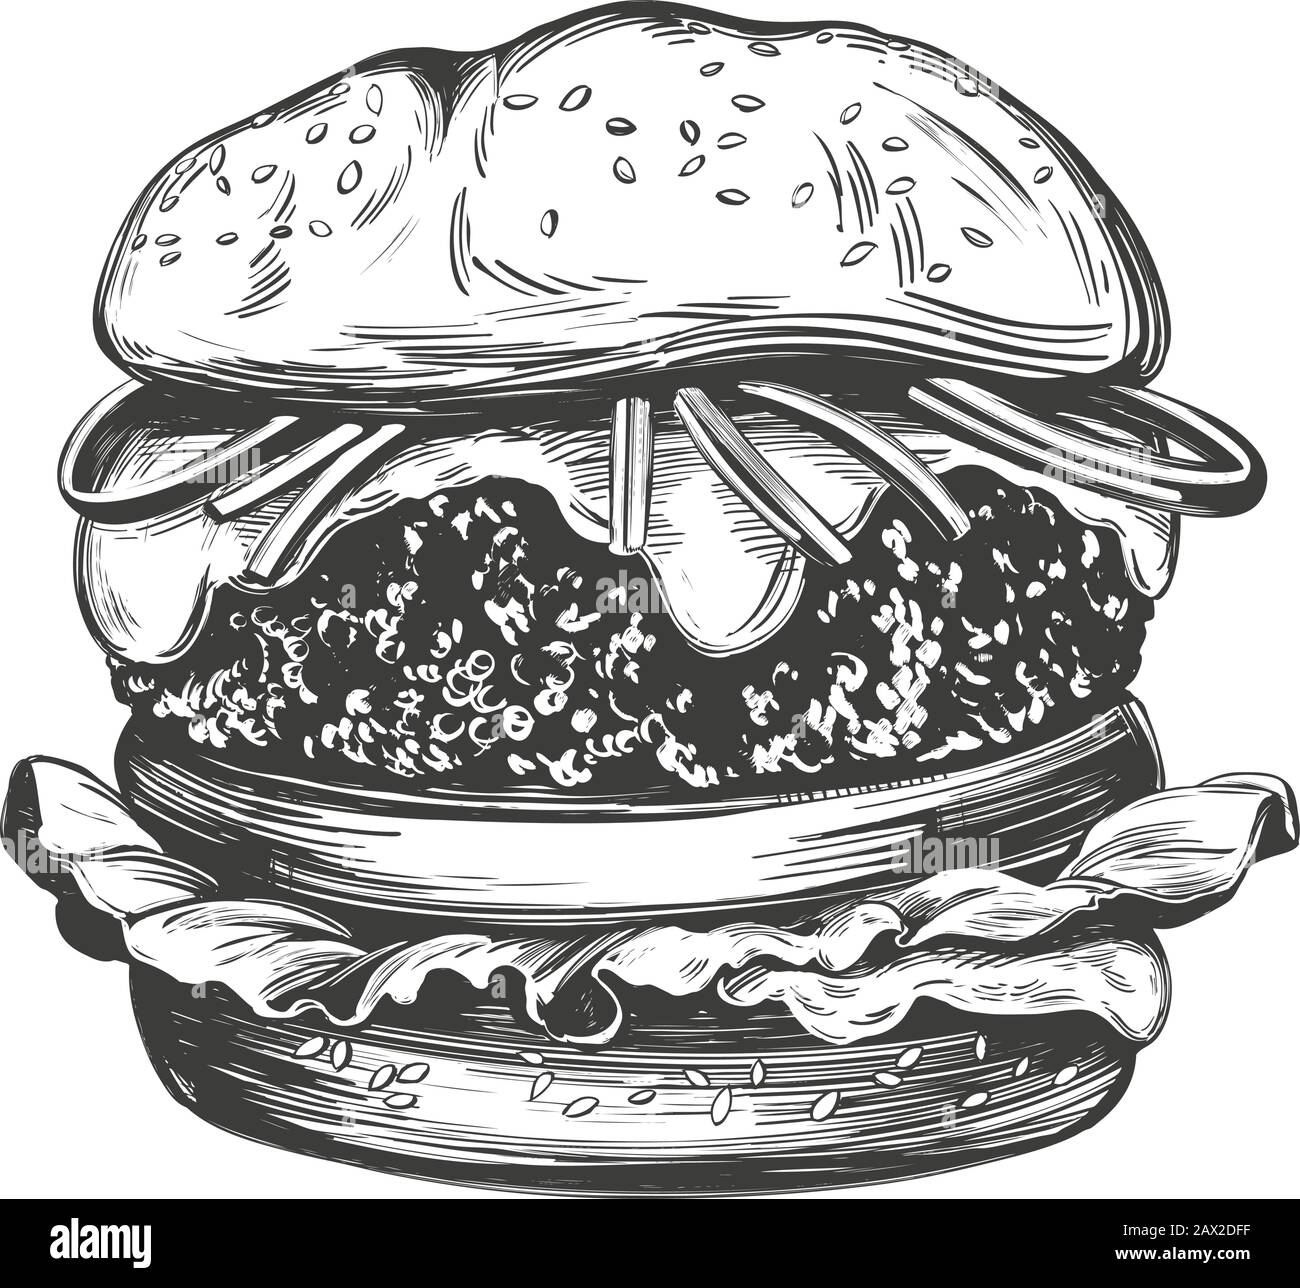 Große Burger, Hamburger handgezeichnete Vektorgrafiken realistische Skizze. Stock Vektor